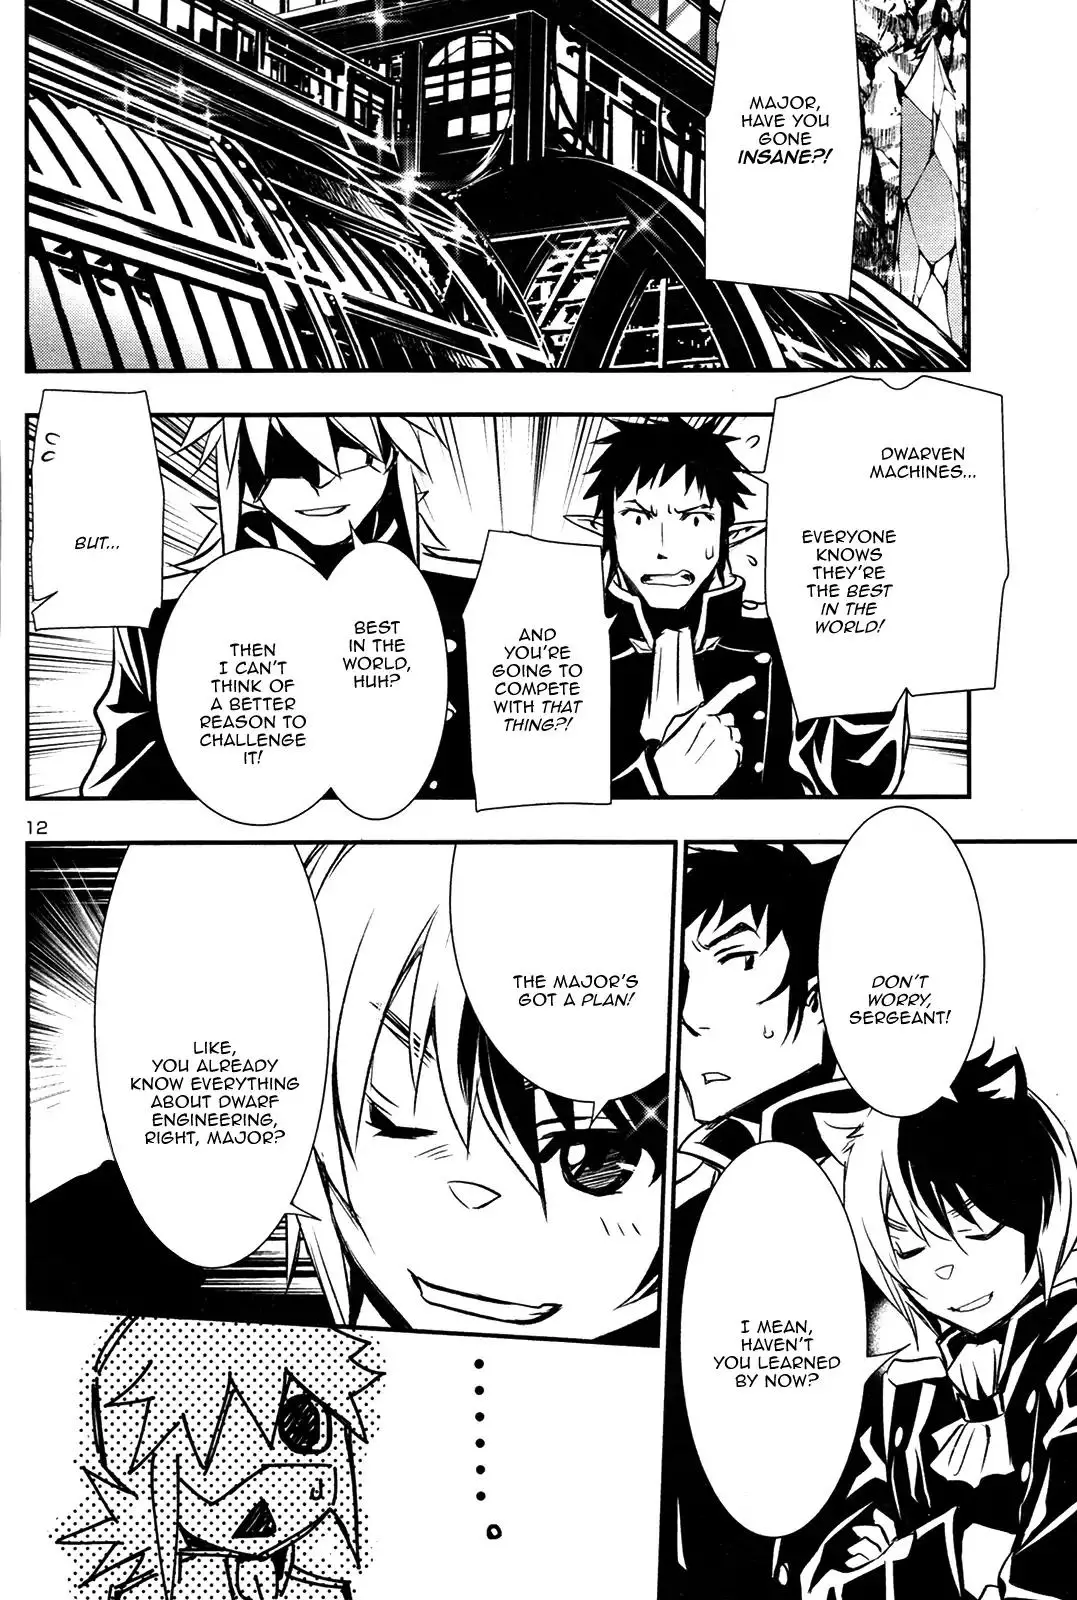 Shinju no Nectar - 10 page 10